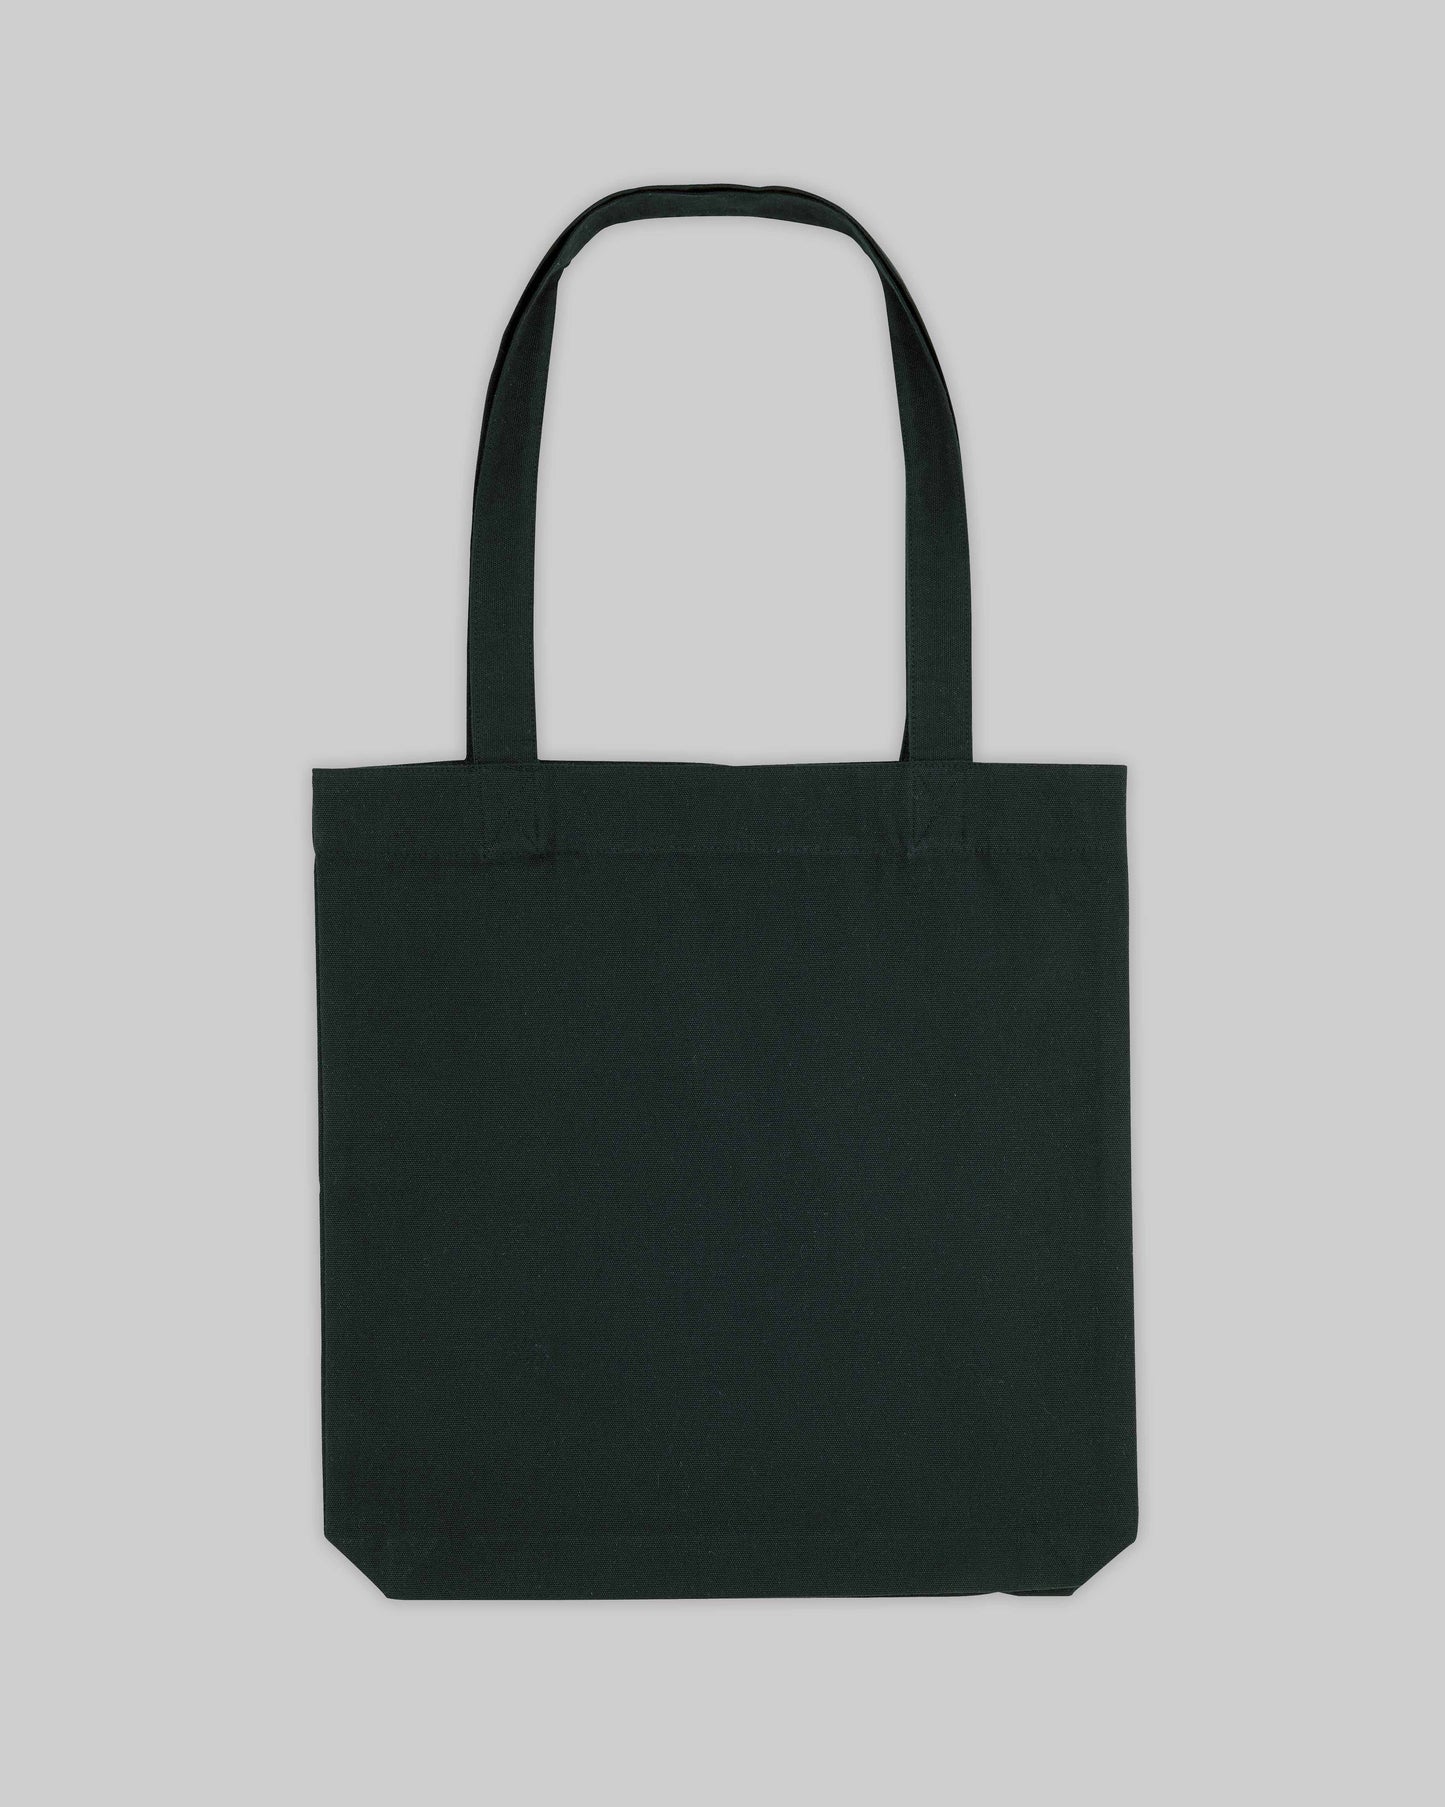 EINHORST® Stofftasche in Schwarz mit dem Motiv "Blumenstrauß", Bild von Stofftasche von hinten